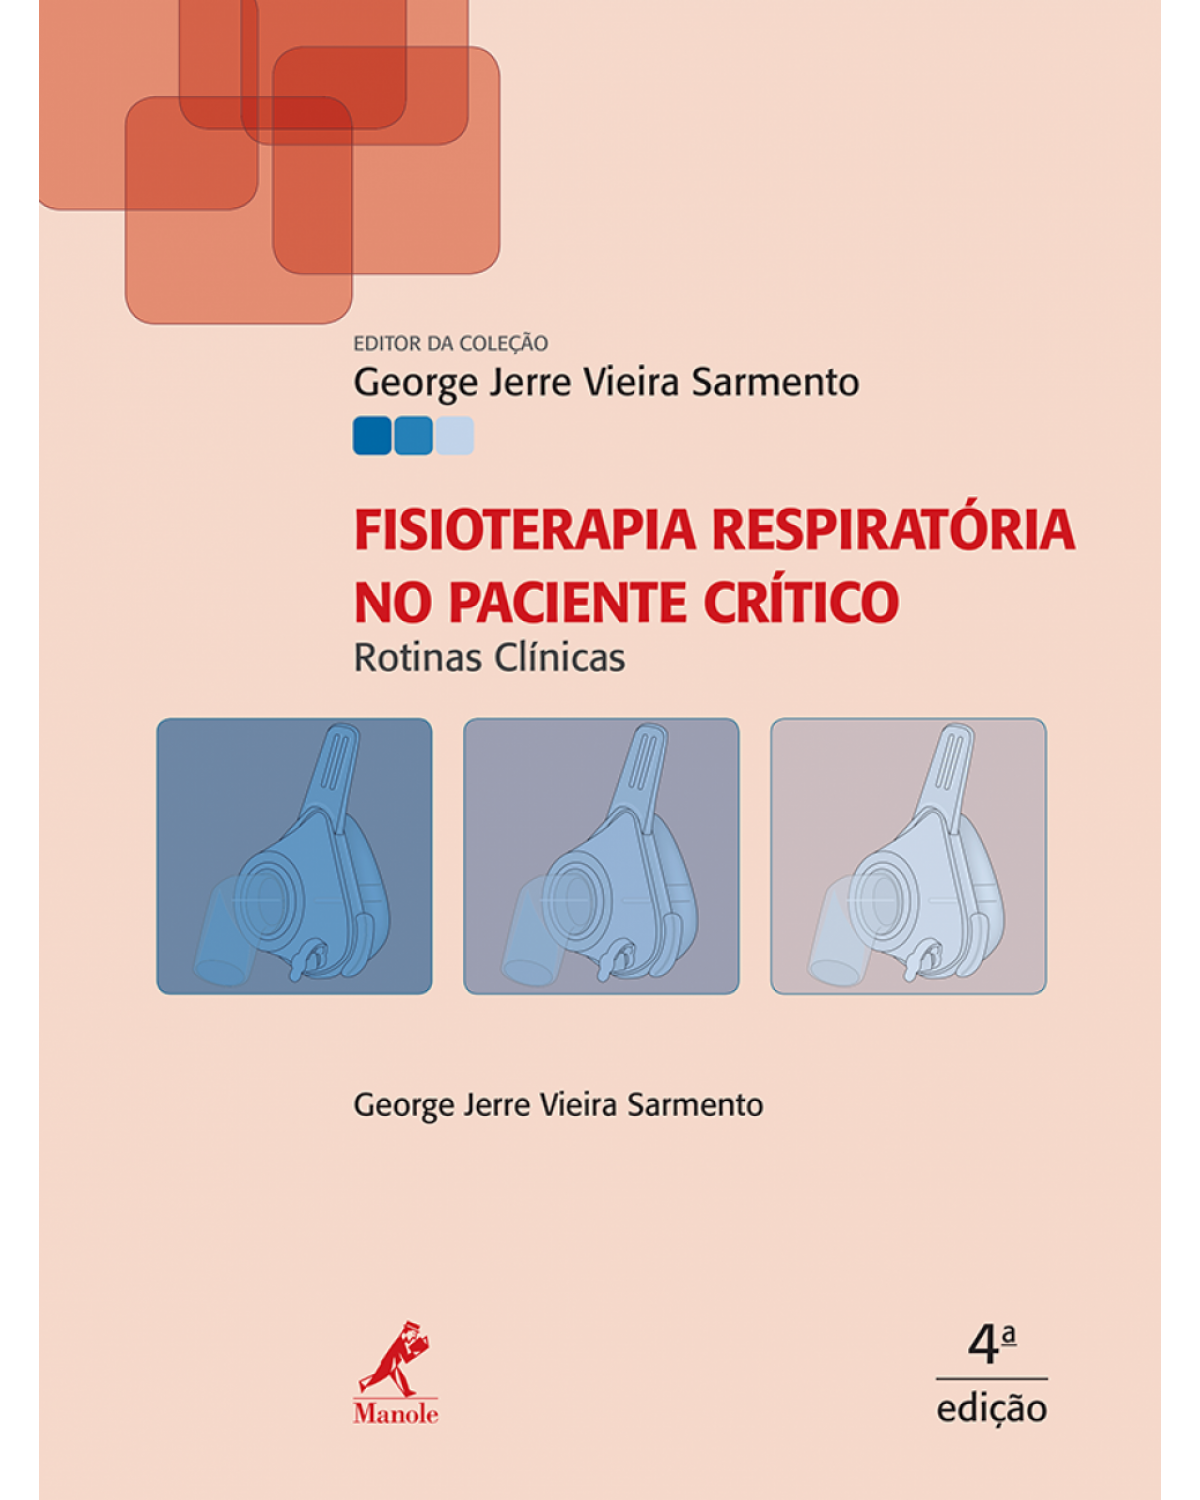 Fisioterapia respiratória no paciente crítico - Rotinas clínicas - 4ª Edição | 2016